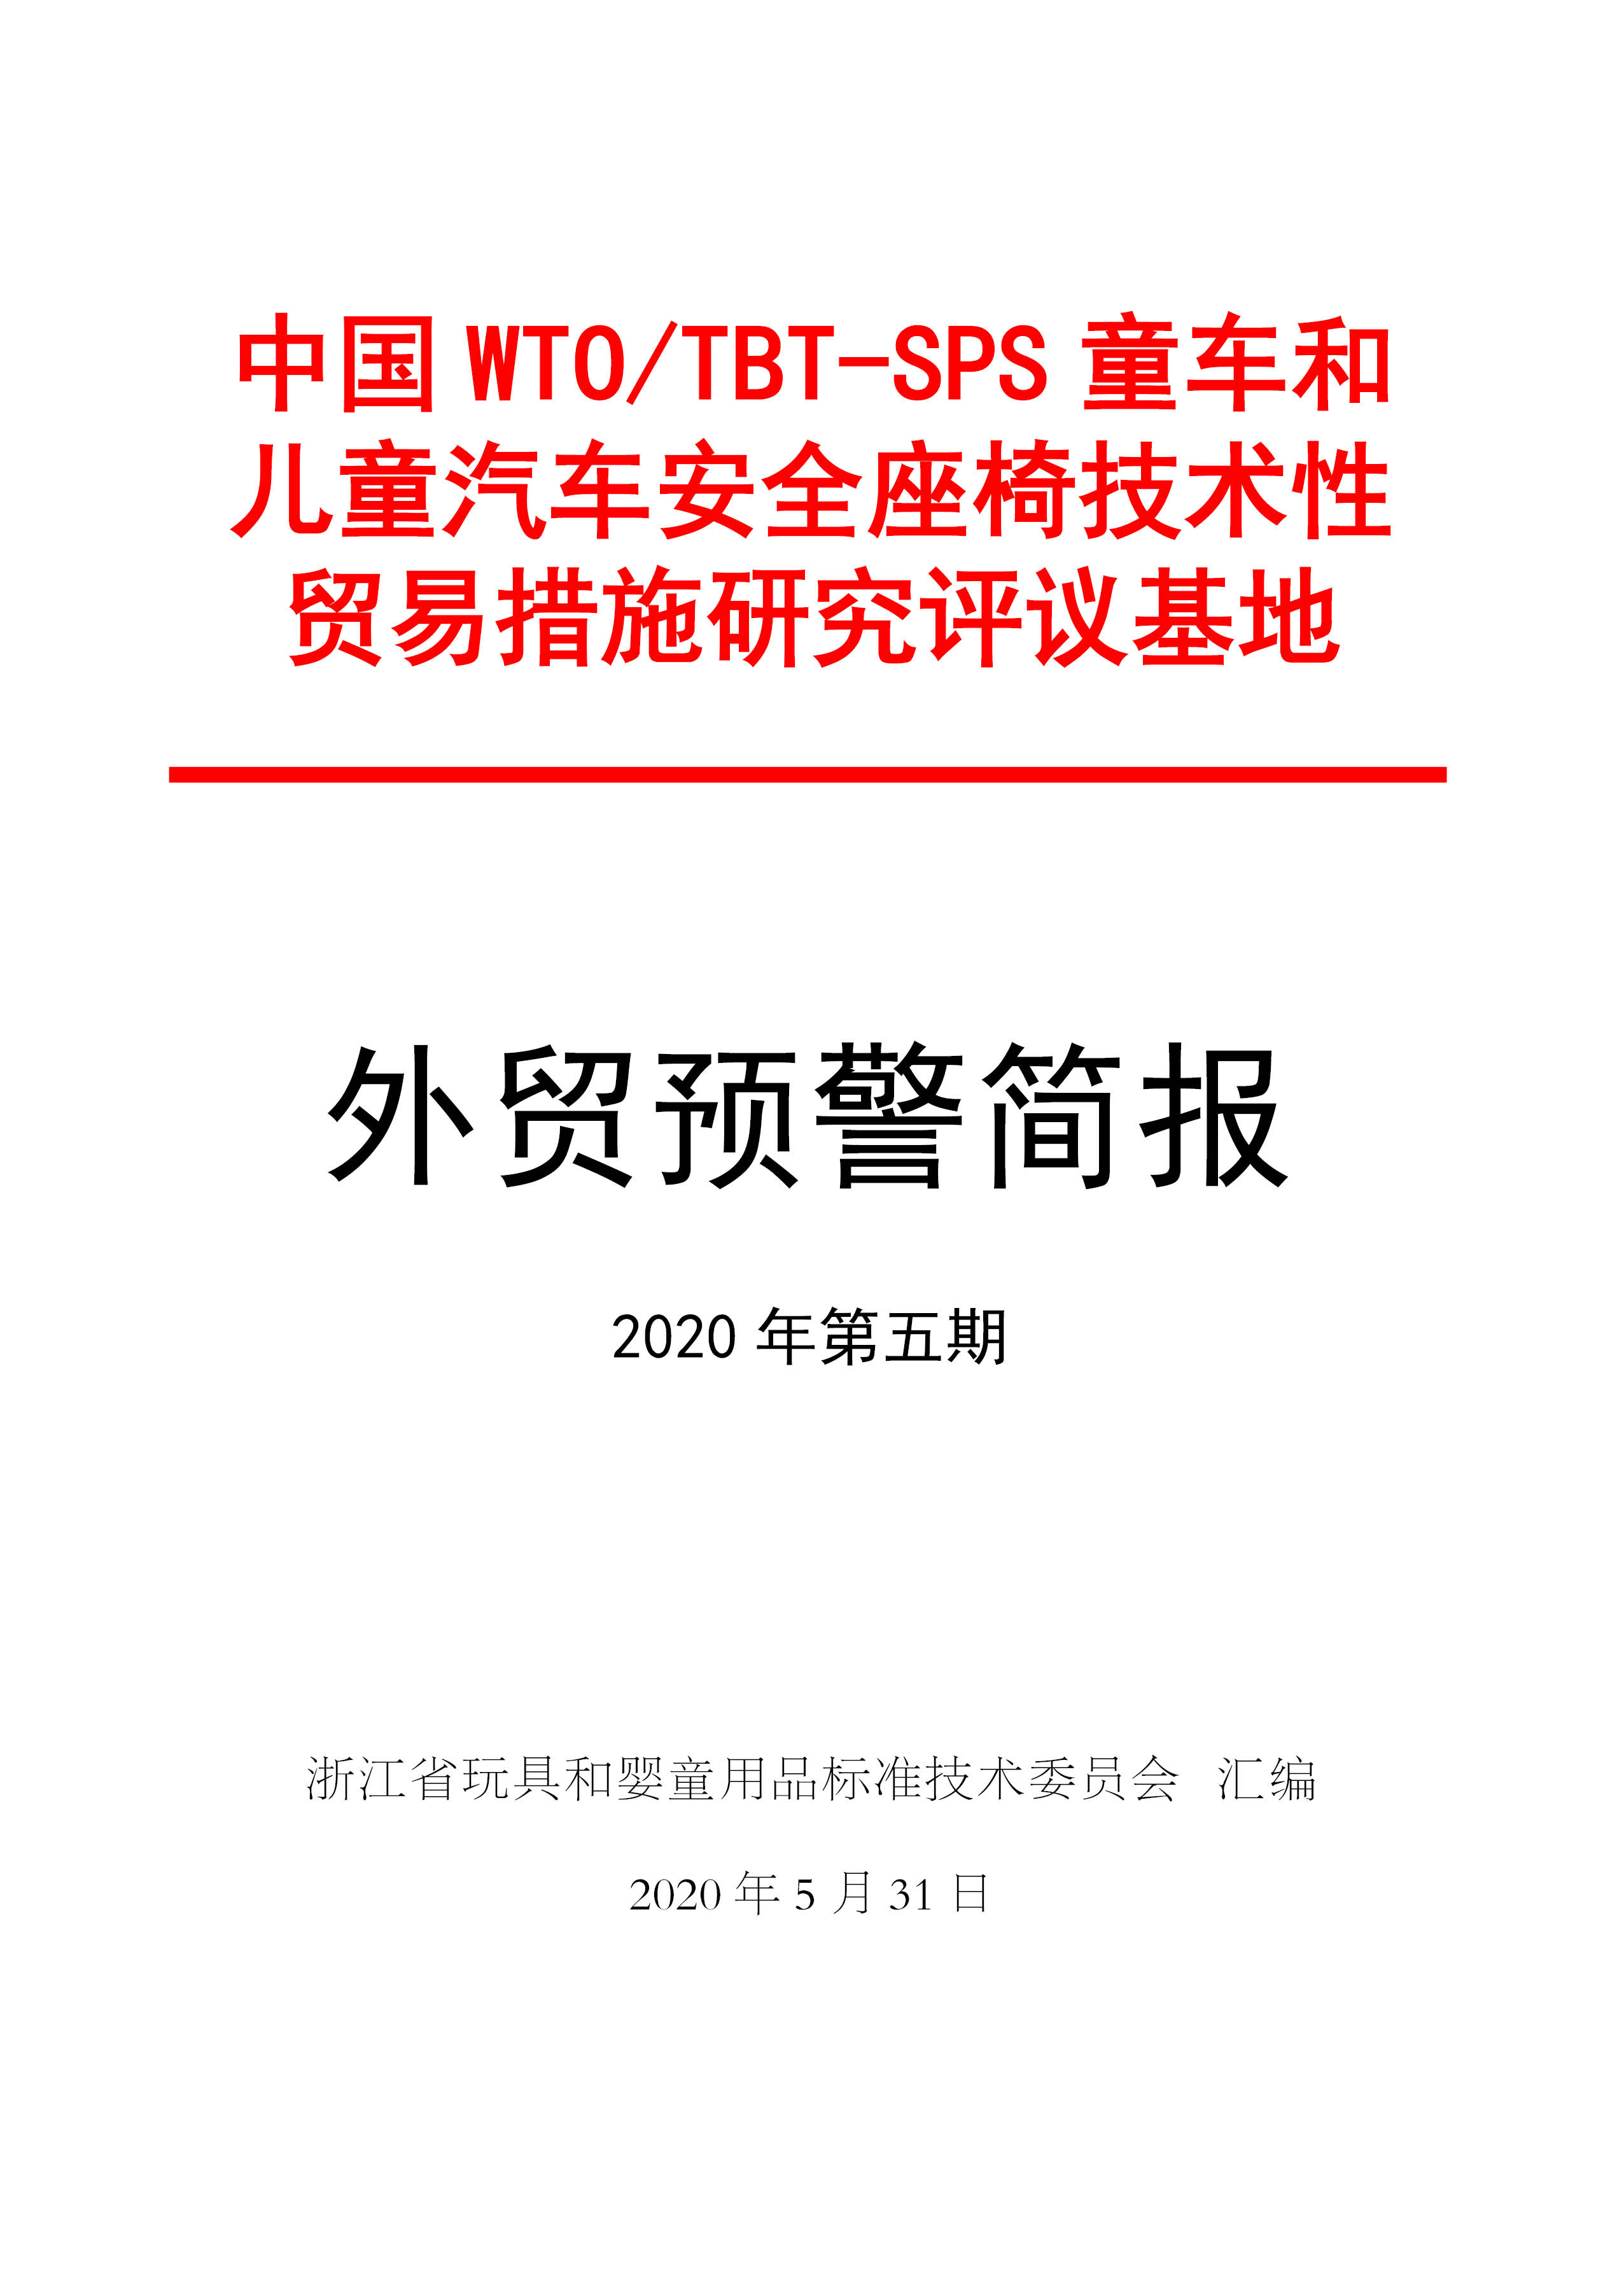 2020年5月浙江省玩具和婴童用品标准化技术委员会预警简报